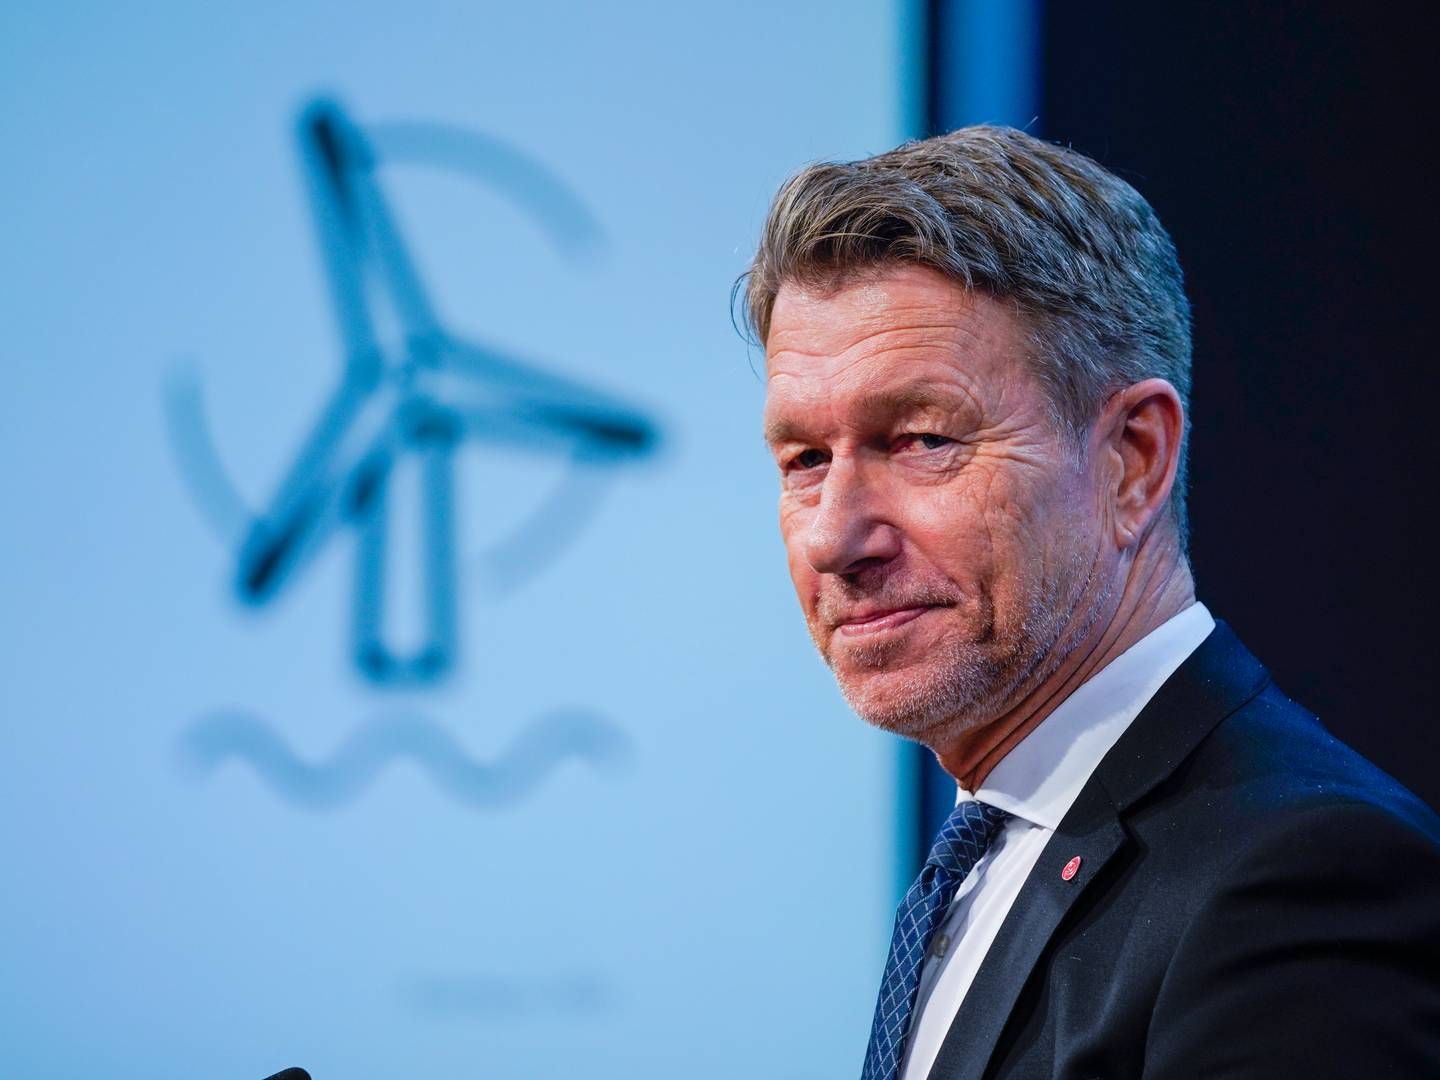 VIL UNNGÅ VINDKRAFT-BRÅK: Olje- og energiminister Terje Aasland (Ap) og regjeringen sender vindkraft-endringer på høring | Foto: NTB